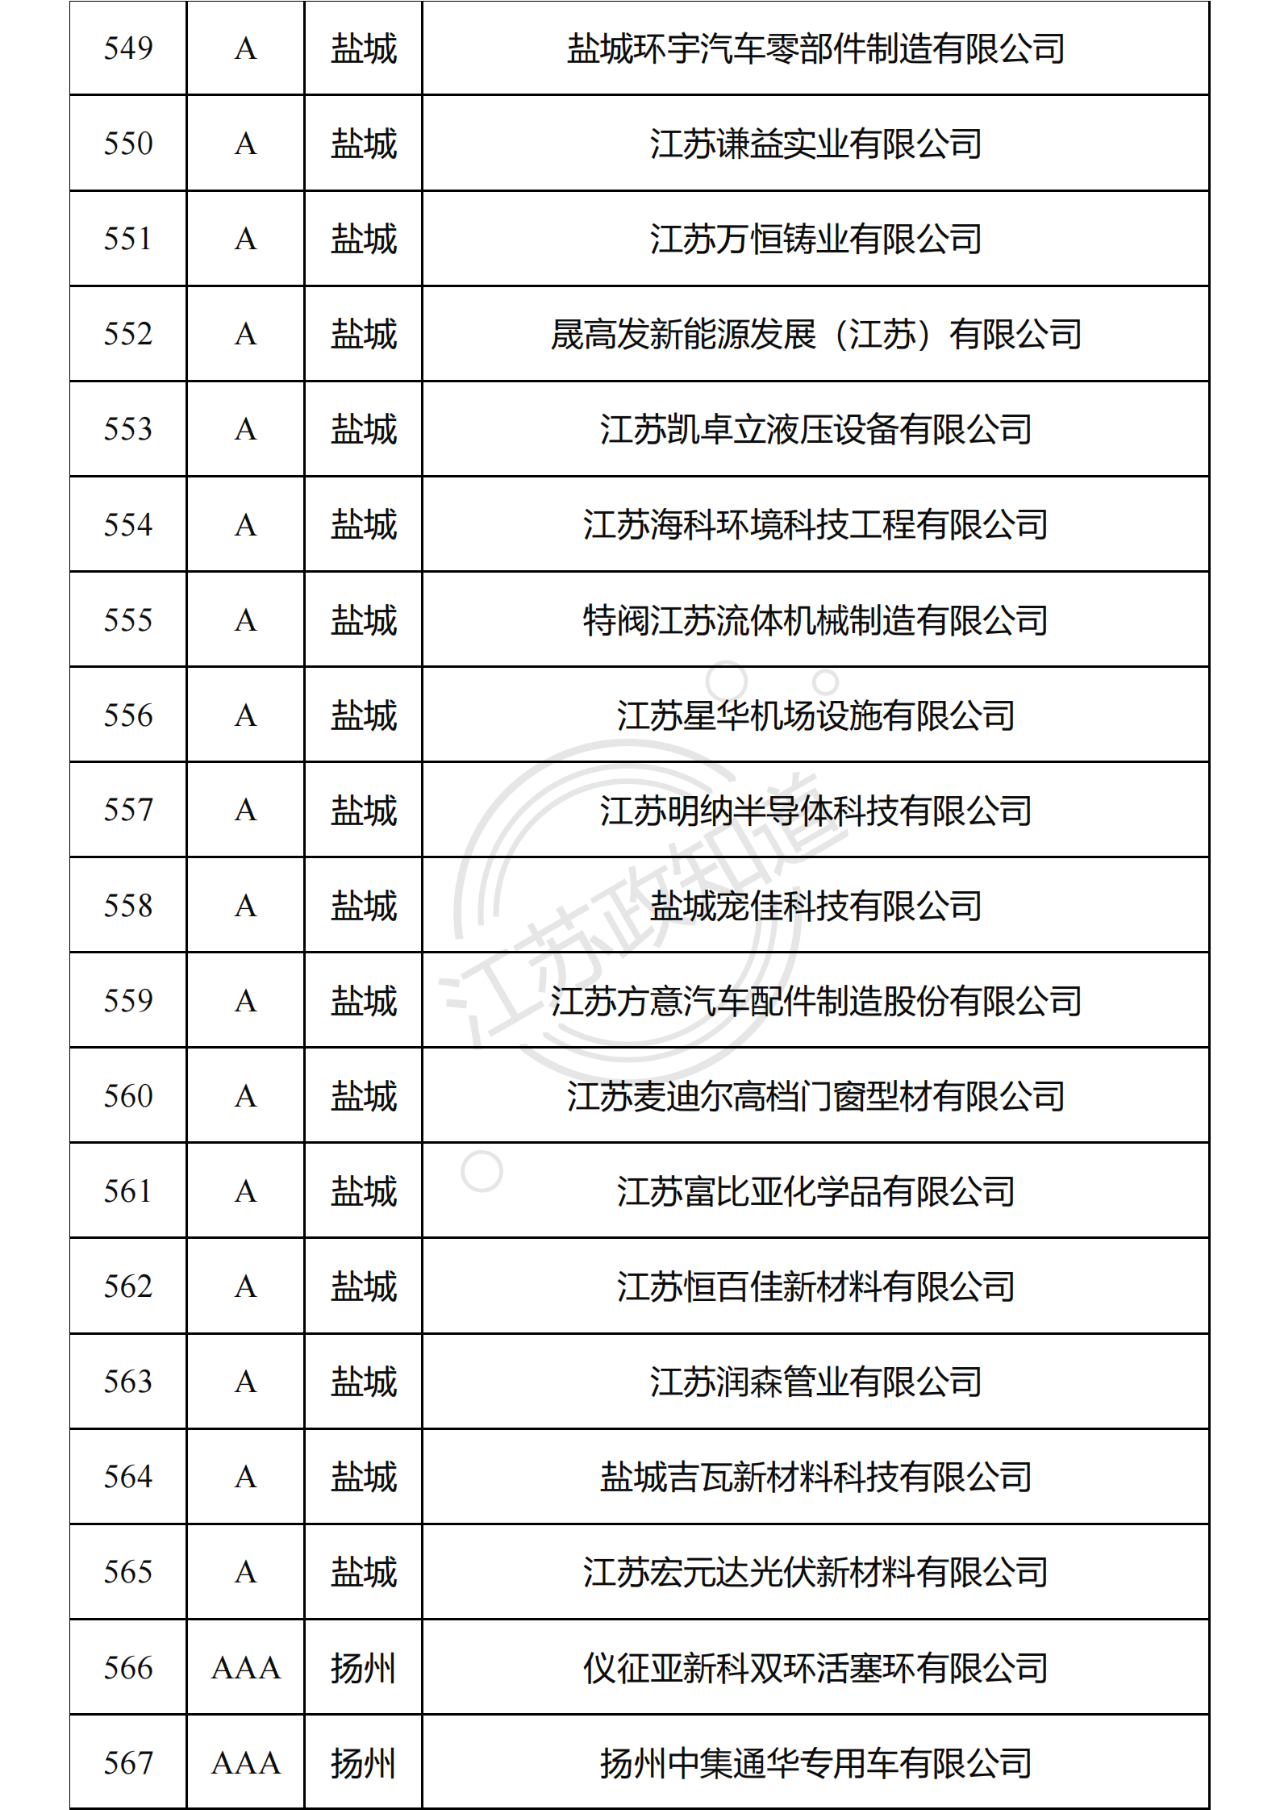 2022年度江苏省两化融合管理体系贯标试点企业培育对象拟认定名单31.png